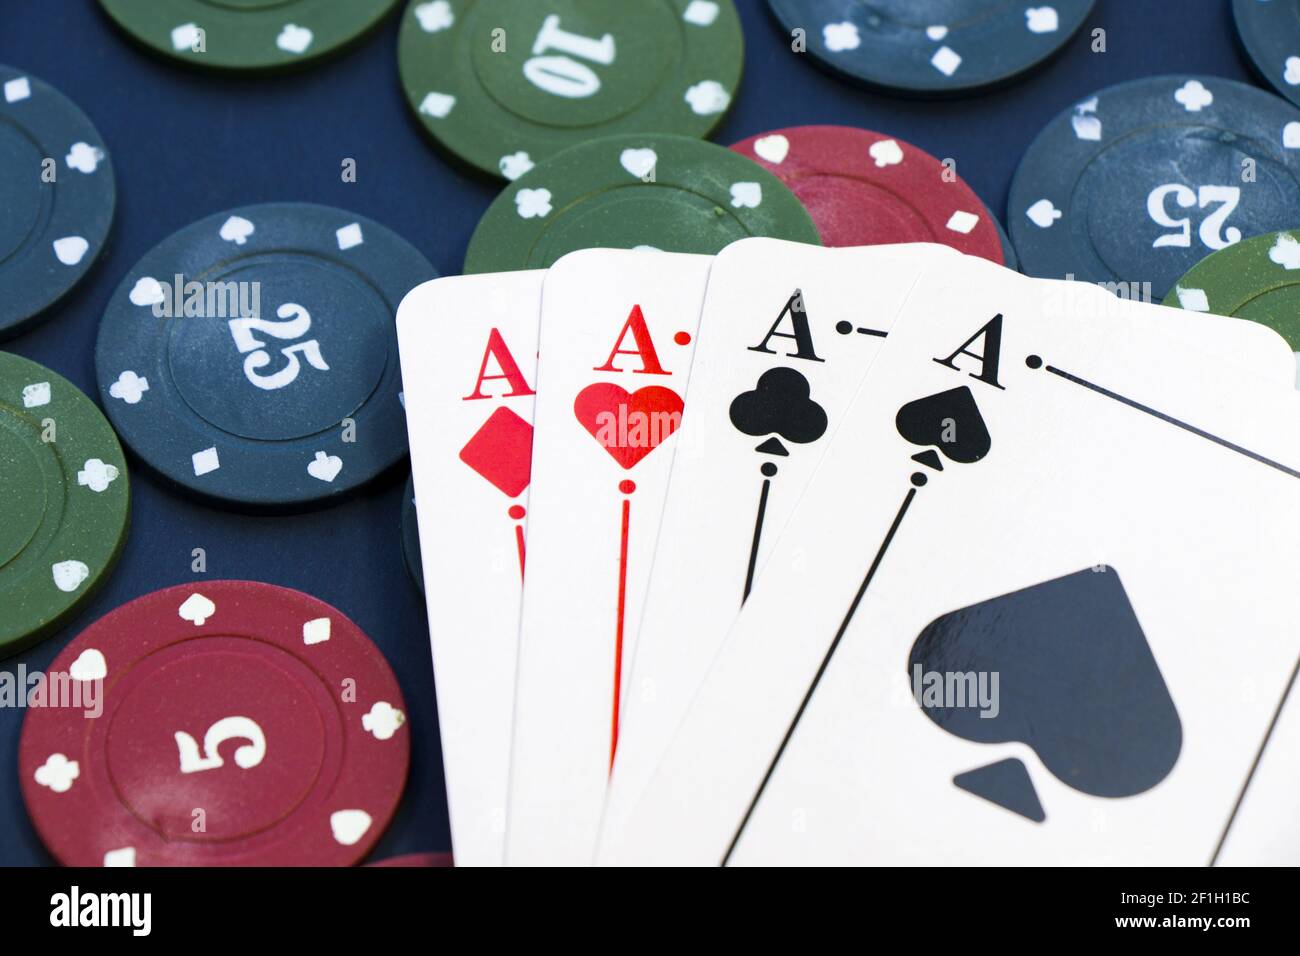 Ein Nahaufnahme von vier Assen und verschiedenen Chips verteilt Auf einem Pokertisch Stockfoto